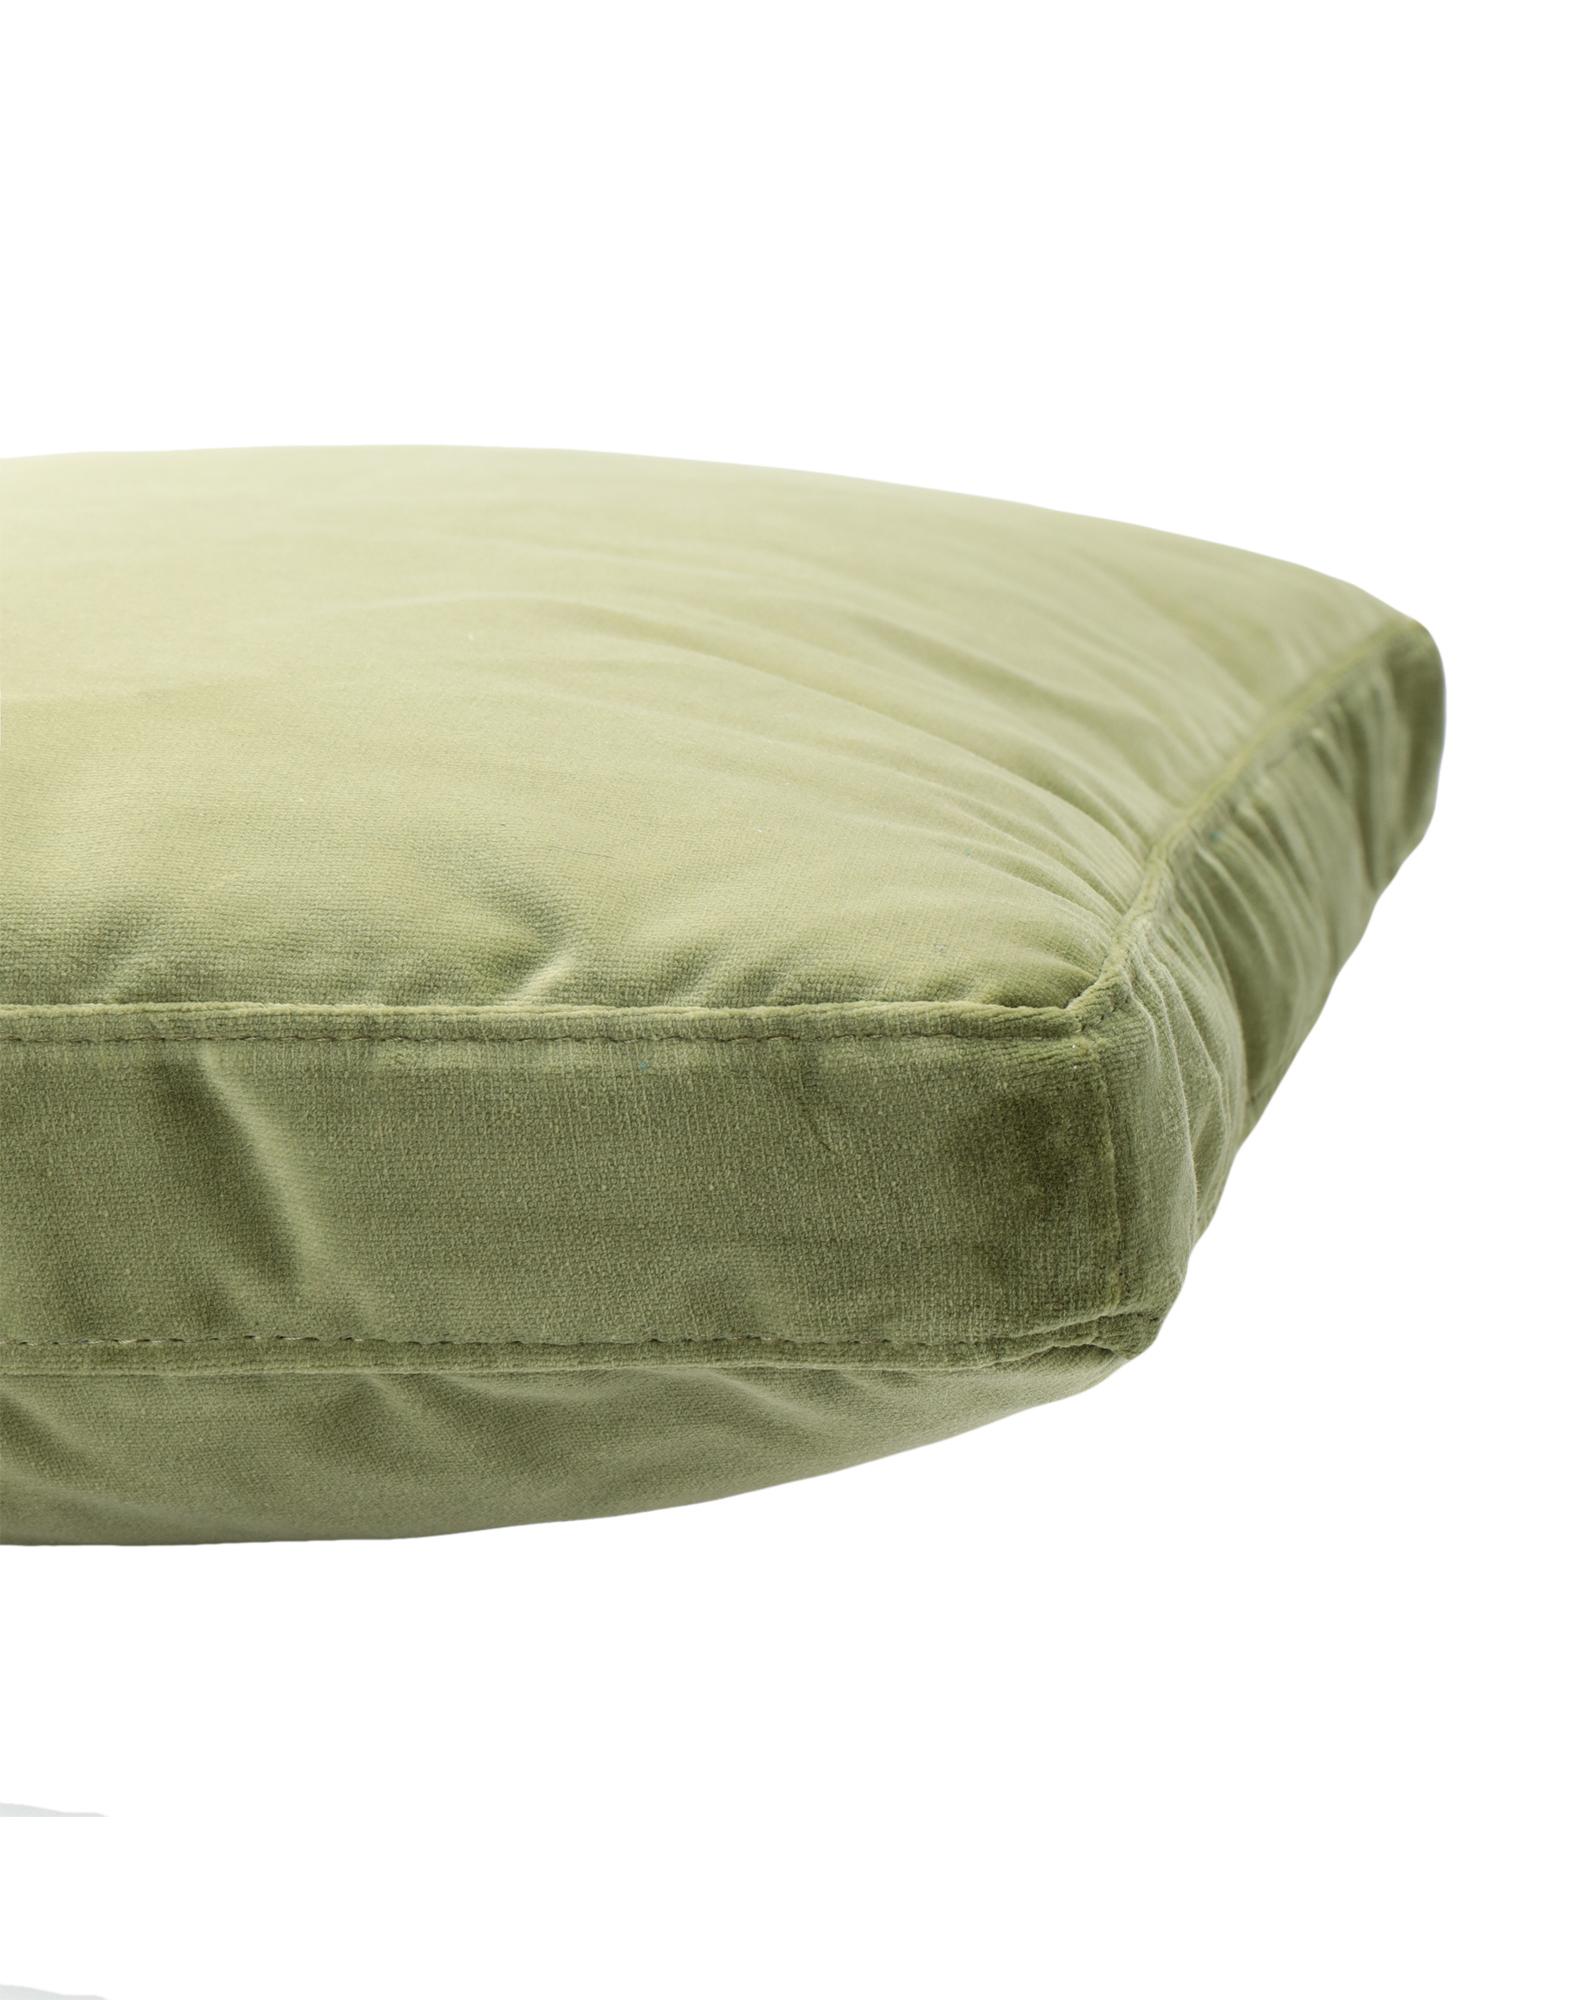 Modern Kartell Cushions Largo in Velvet by Piero Lissoni For Sale